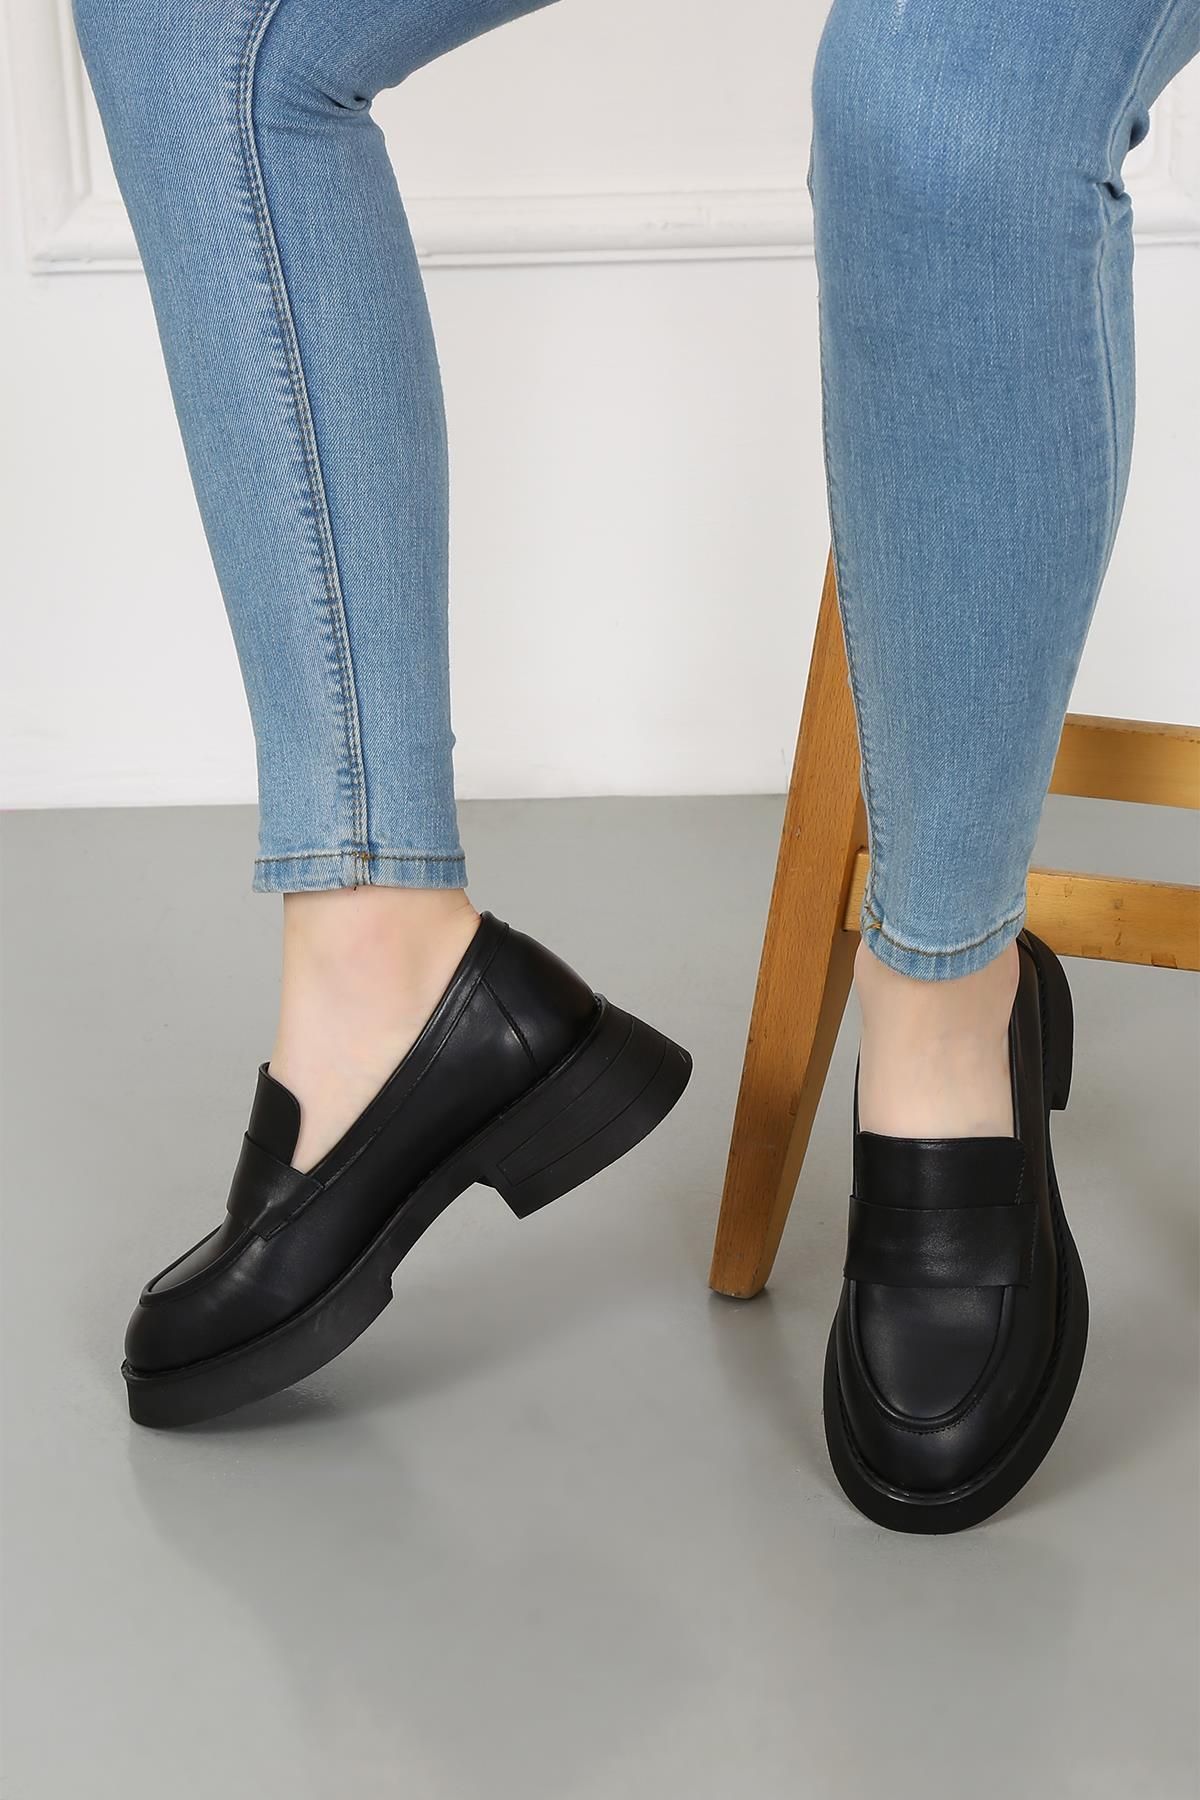 CassidoShoes Siyah Deri Kadın Casual Ayakkabı 010-4041